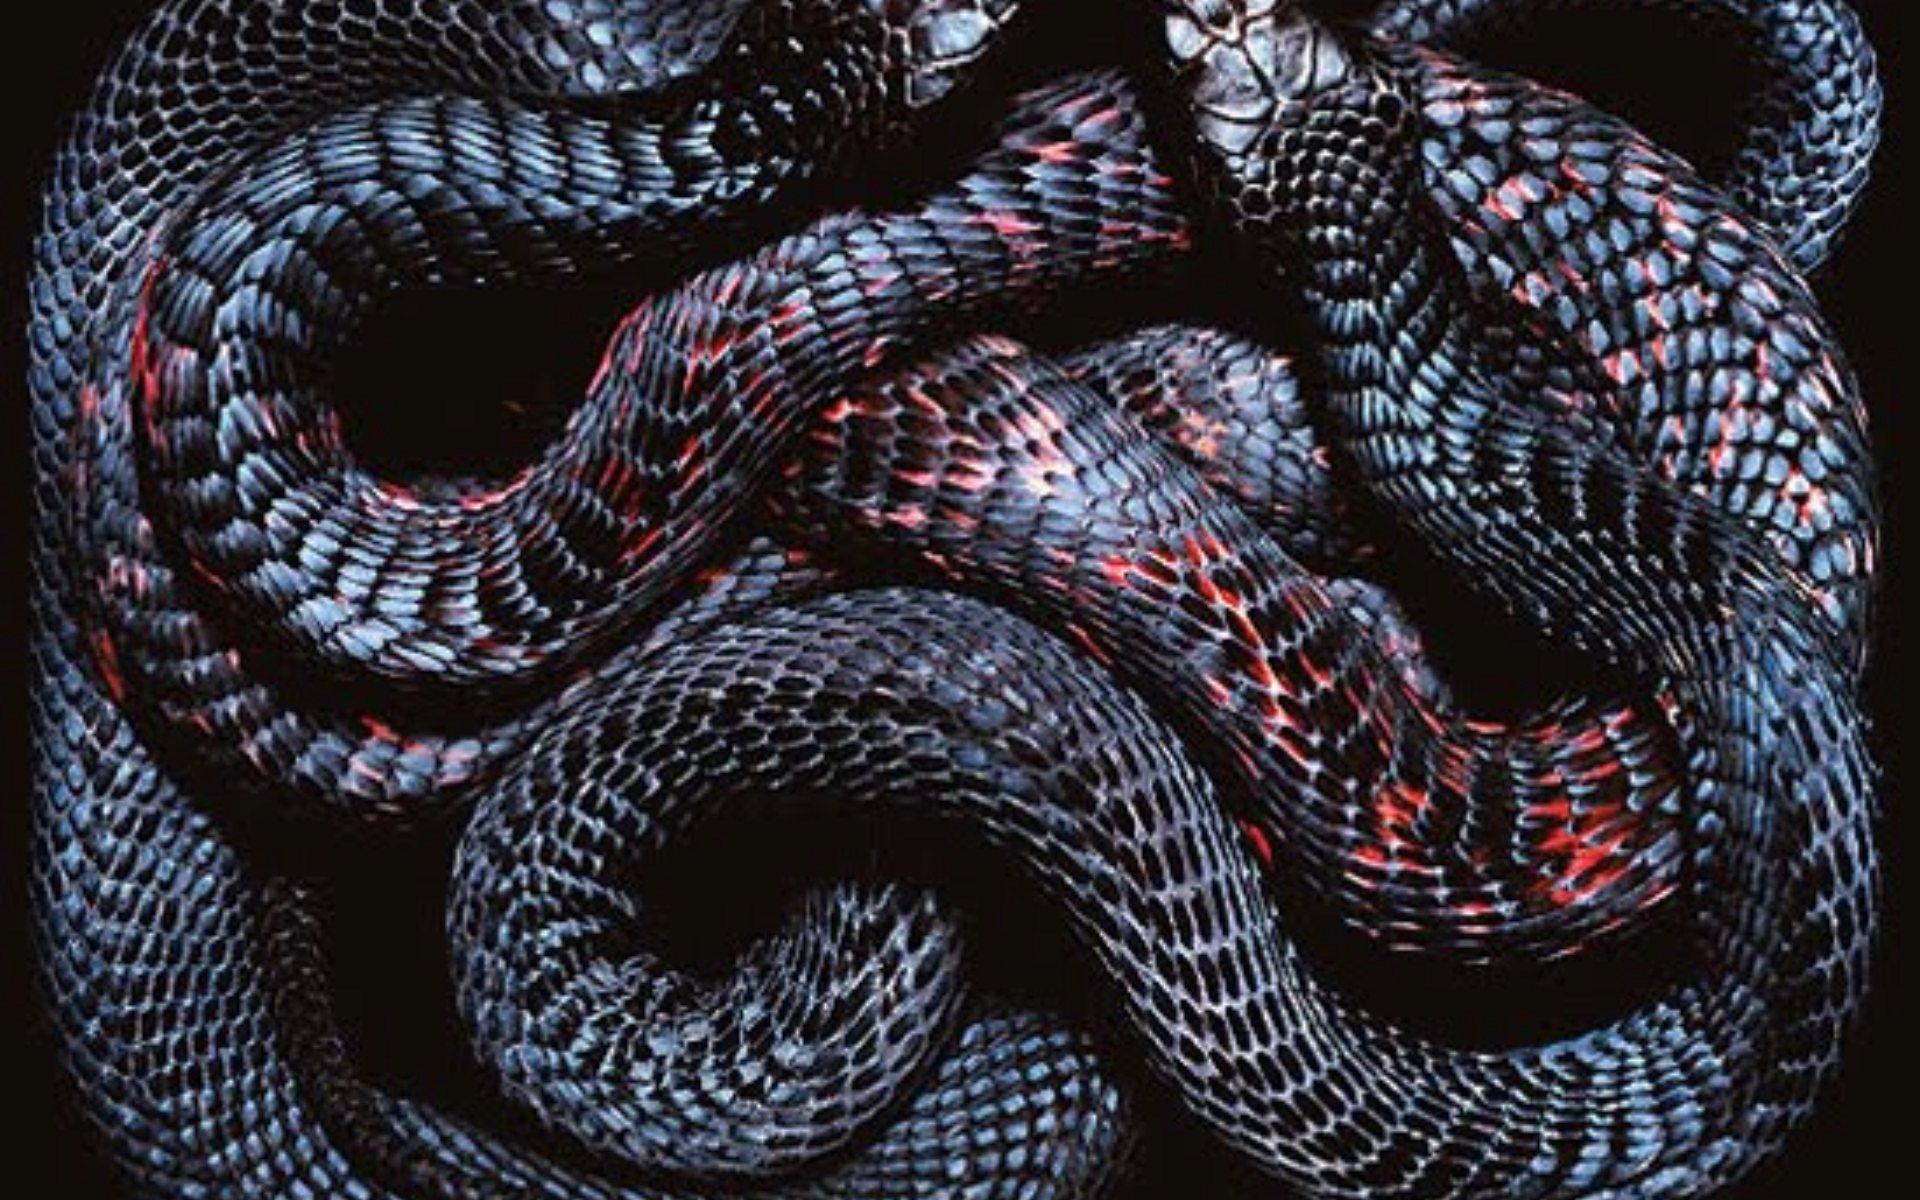 Slither Snake wallpaper